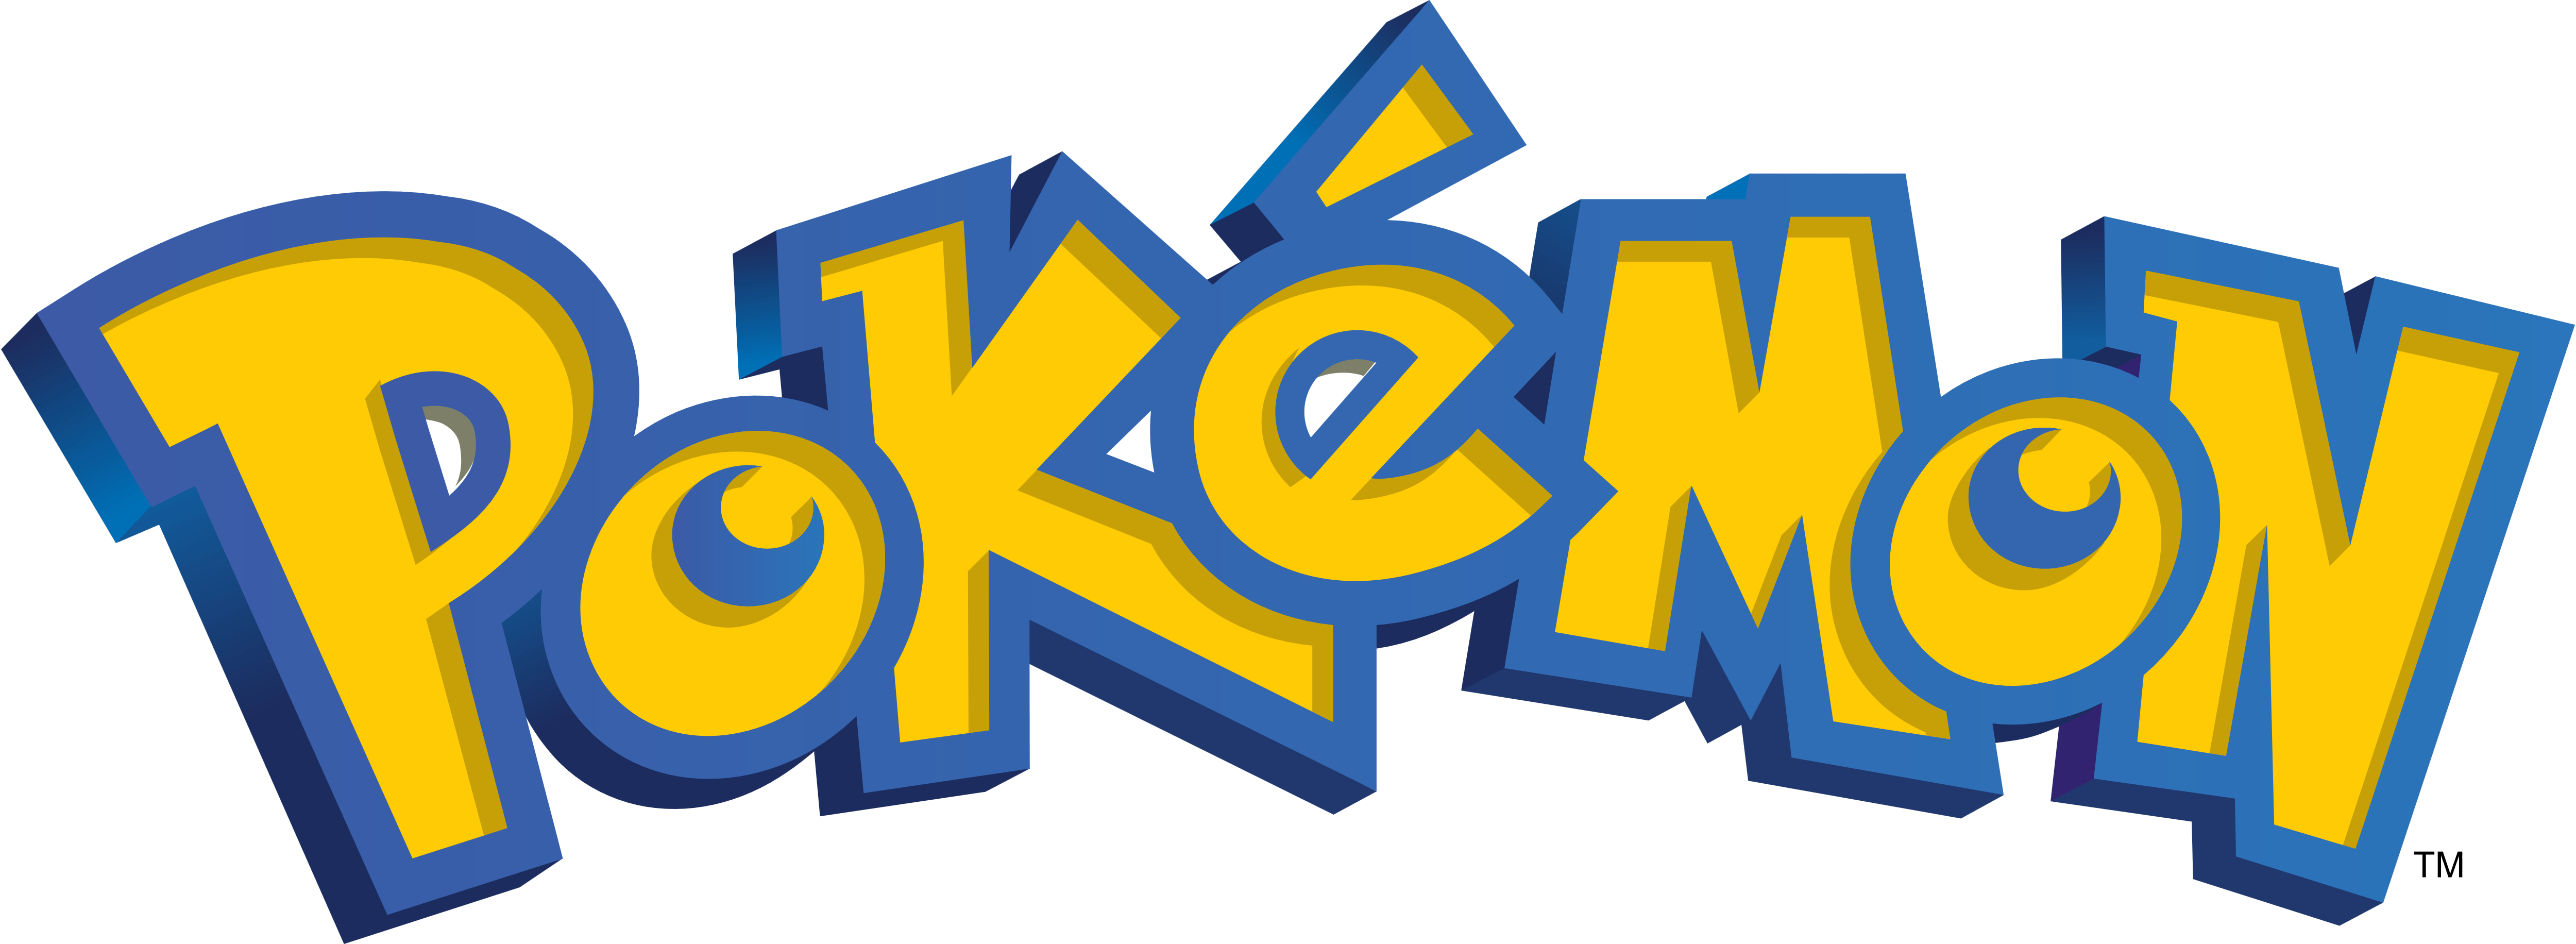 Can I Use Pokemon Go Logo - Pokémon Go – Logos Download